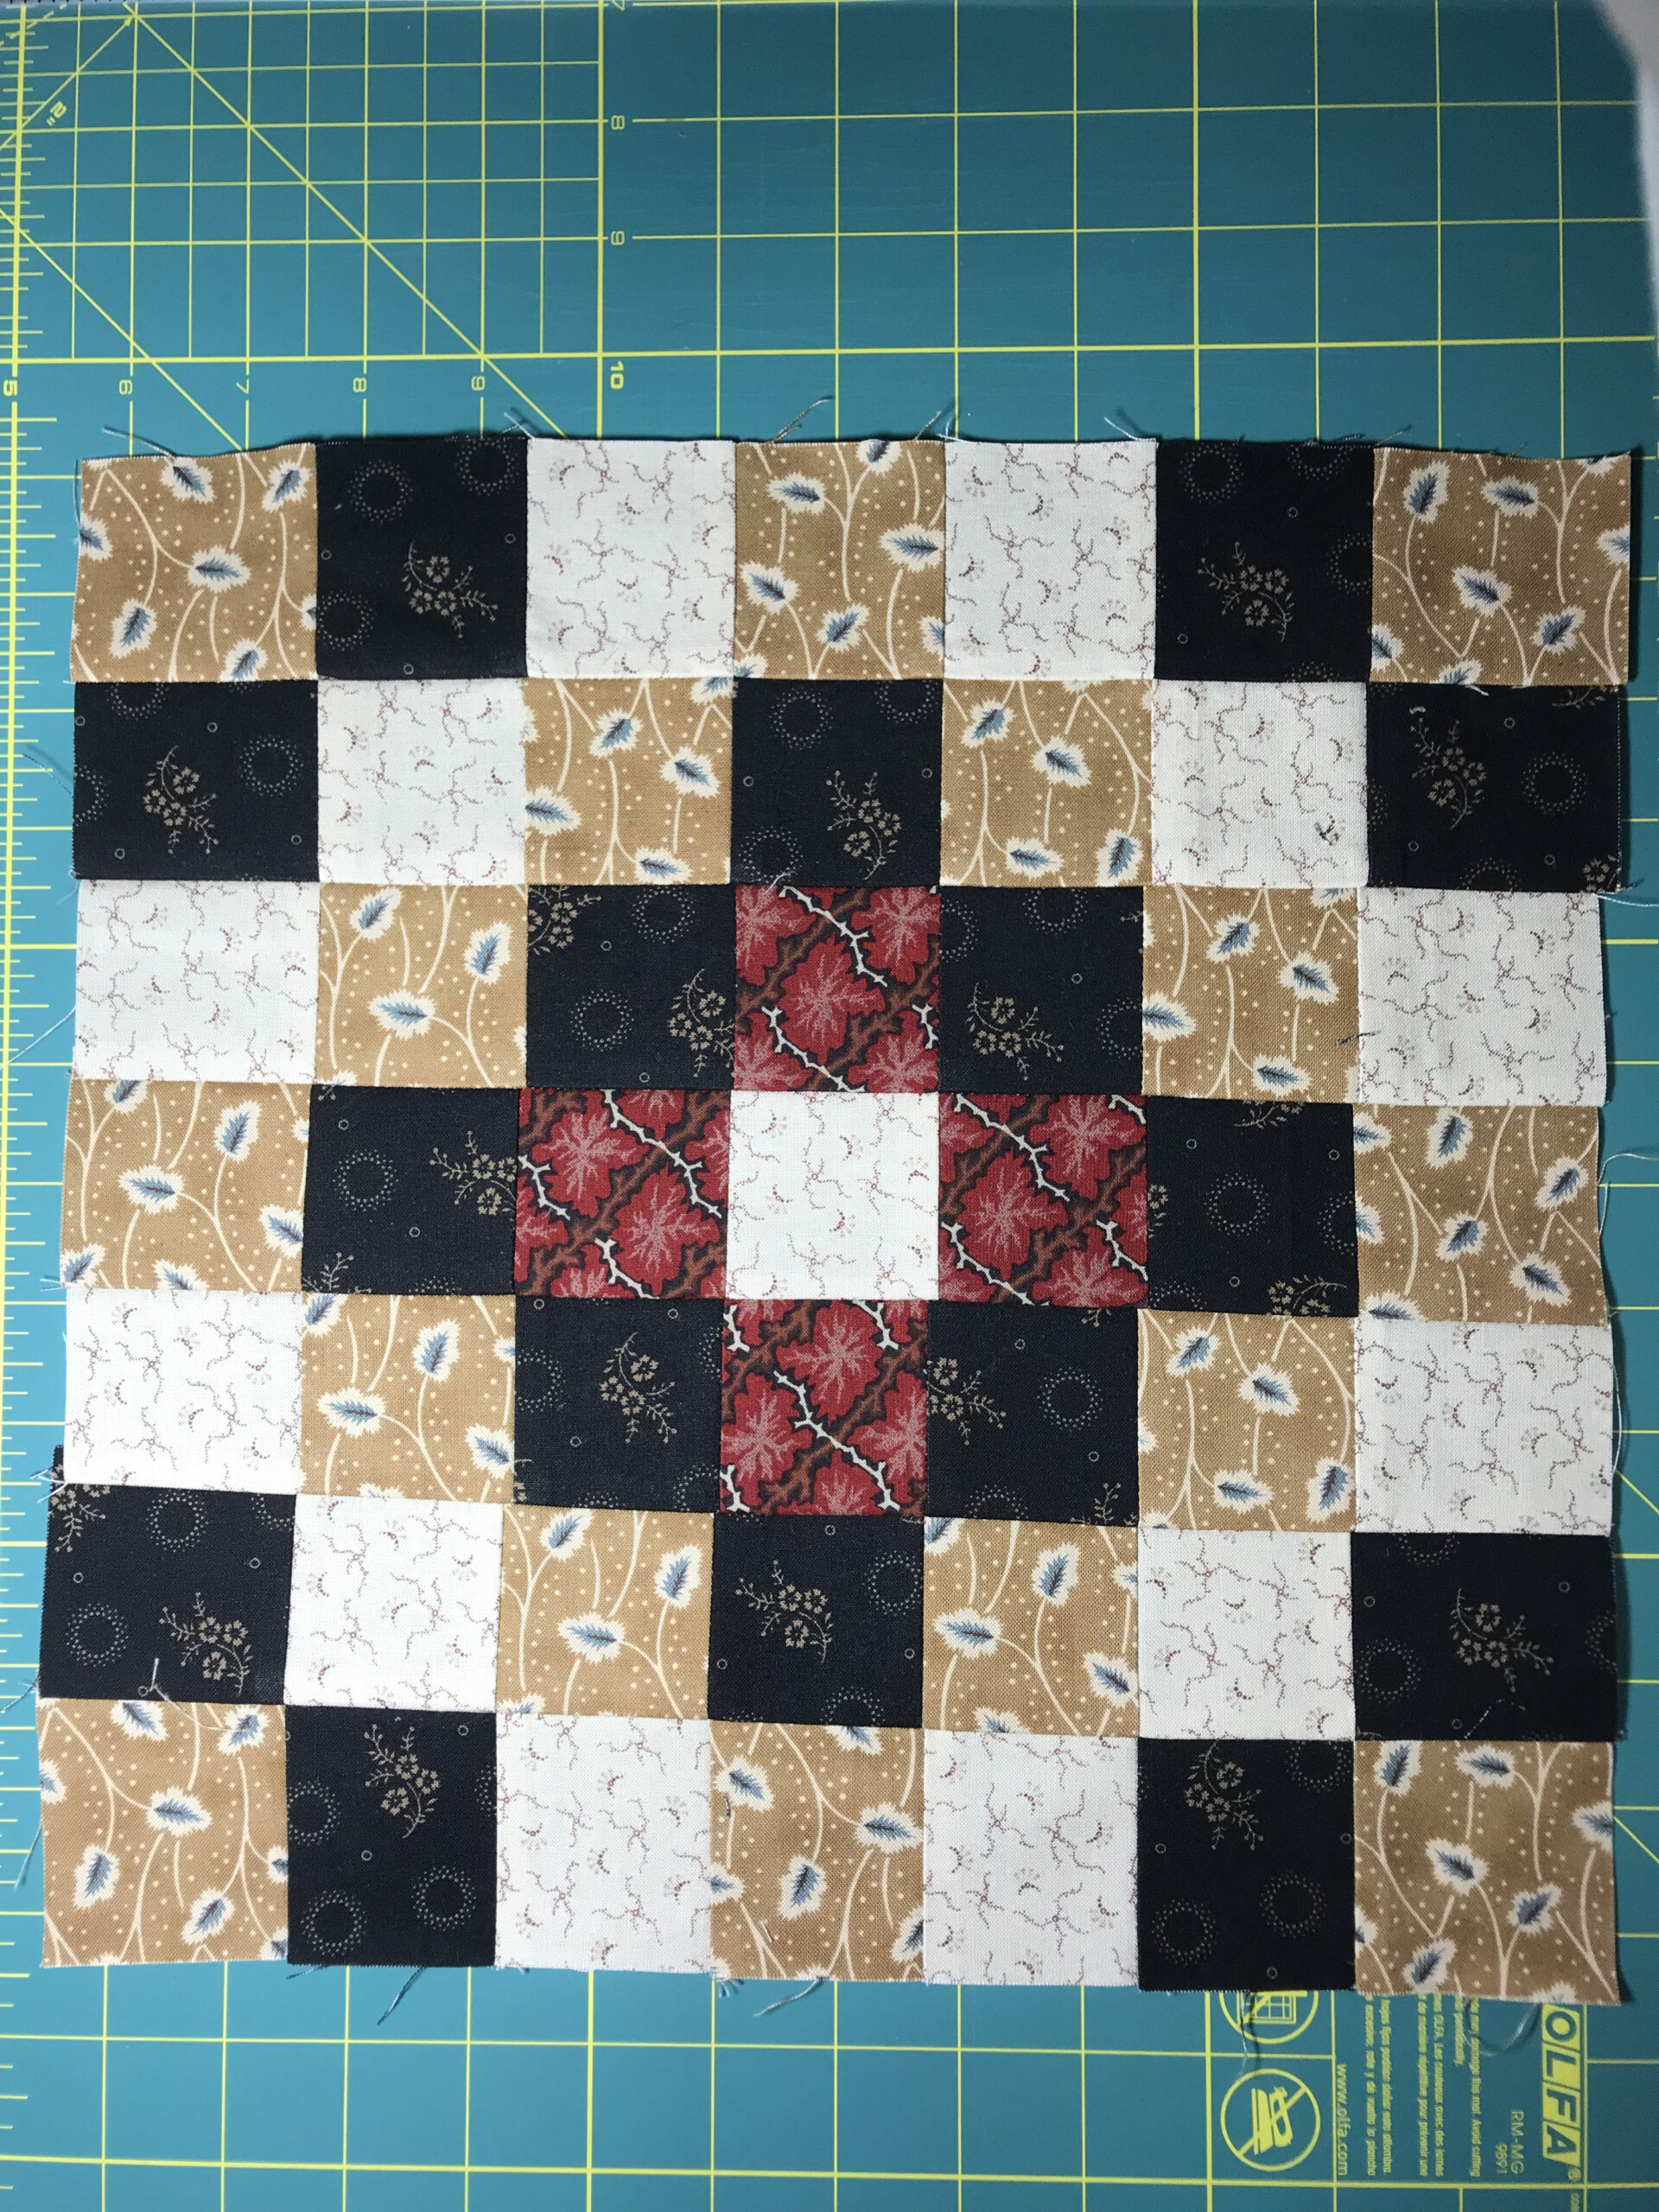 12 Inch Quilt Block Trip Around The World Quilt Patterns Quilts 